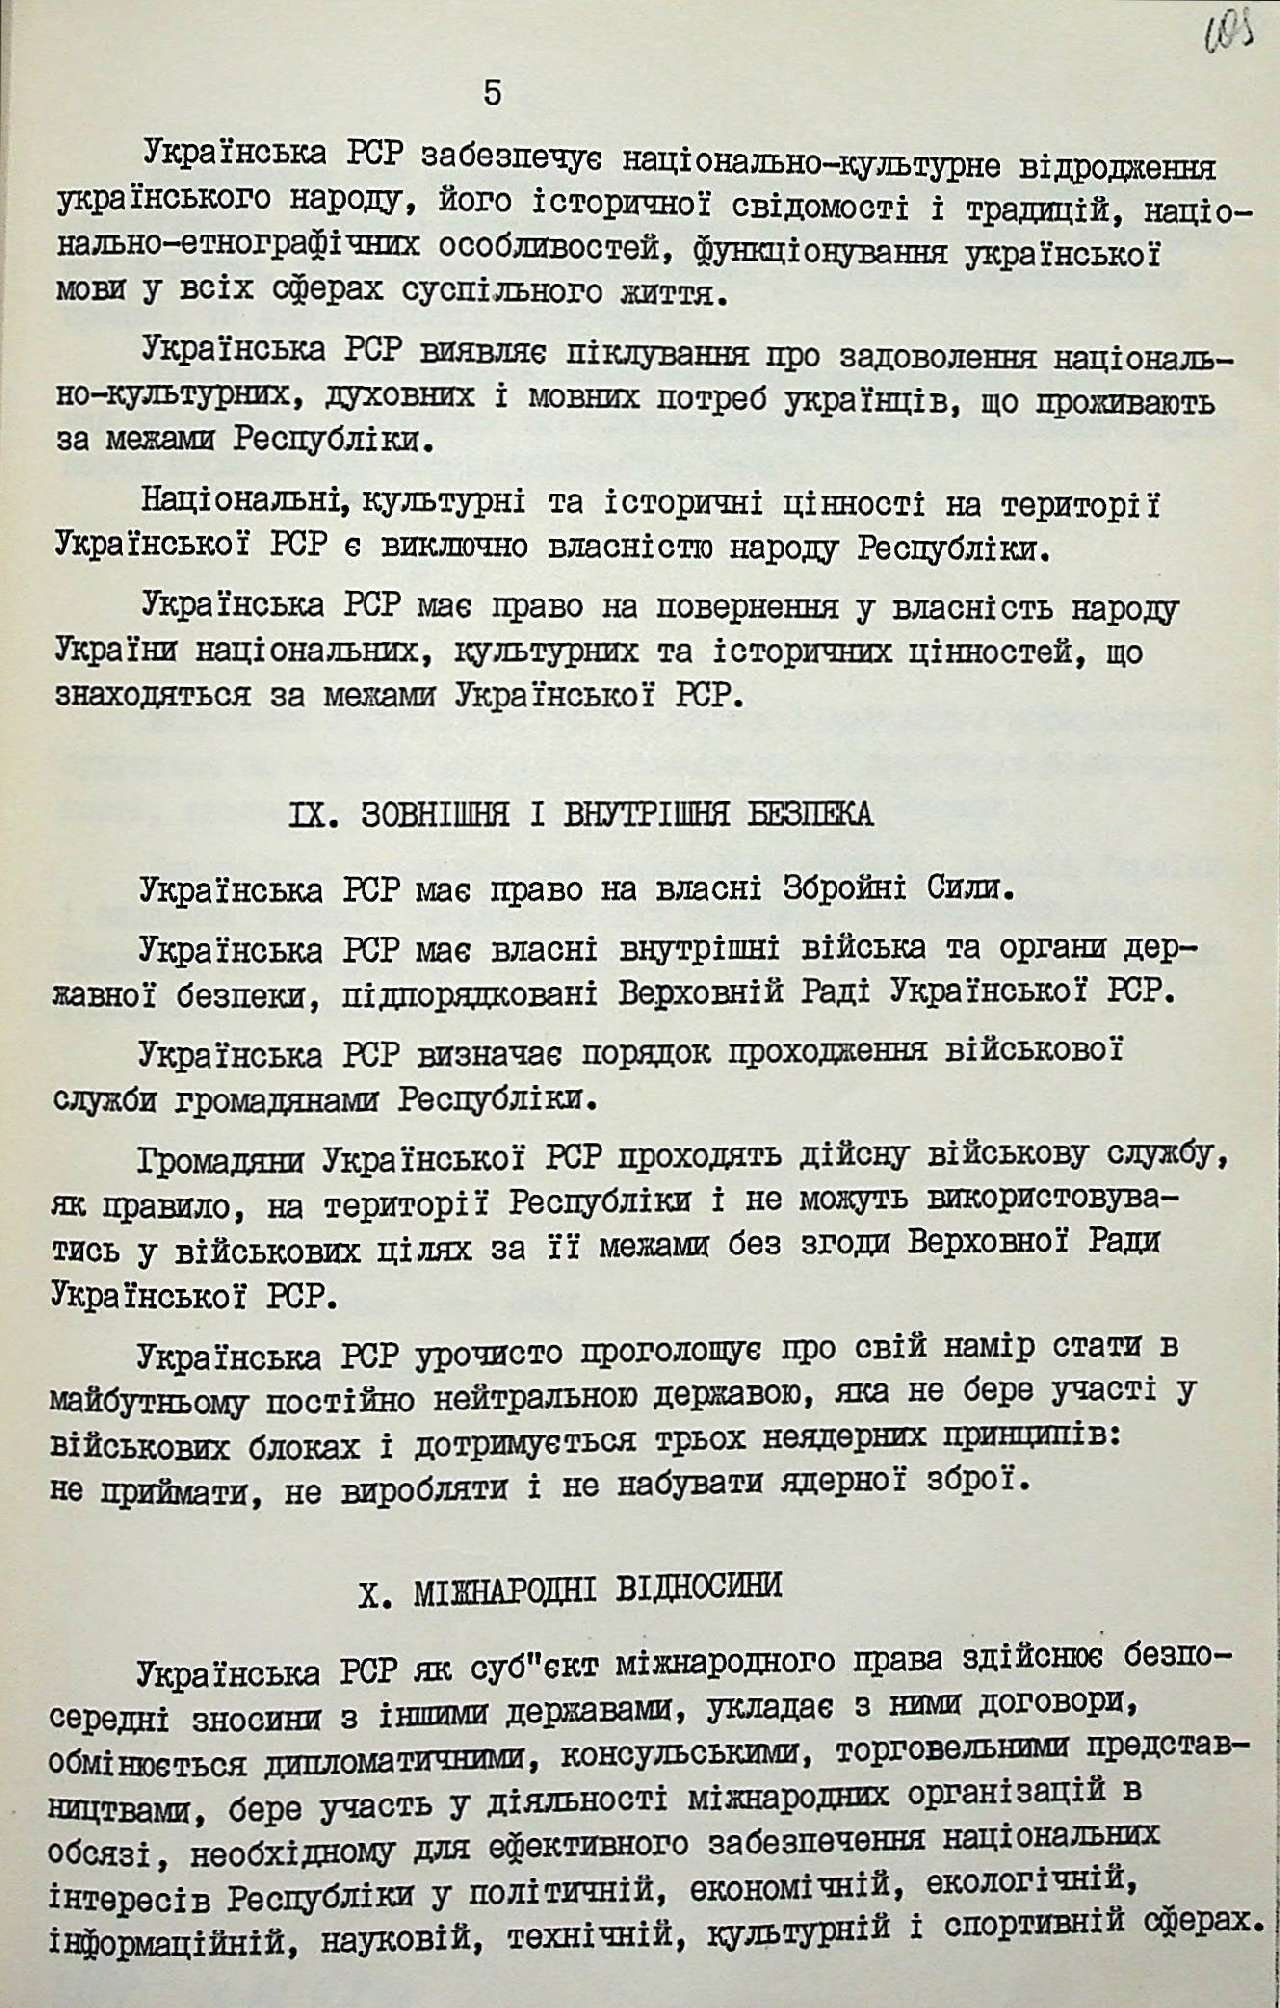 Декларація про державний суверенітет України. 16 липня 1990 р. № 55-ХІІ.